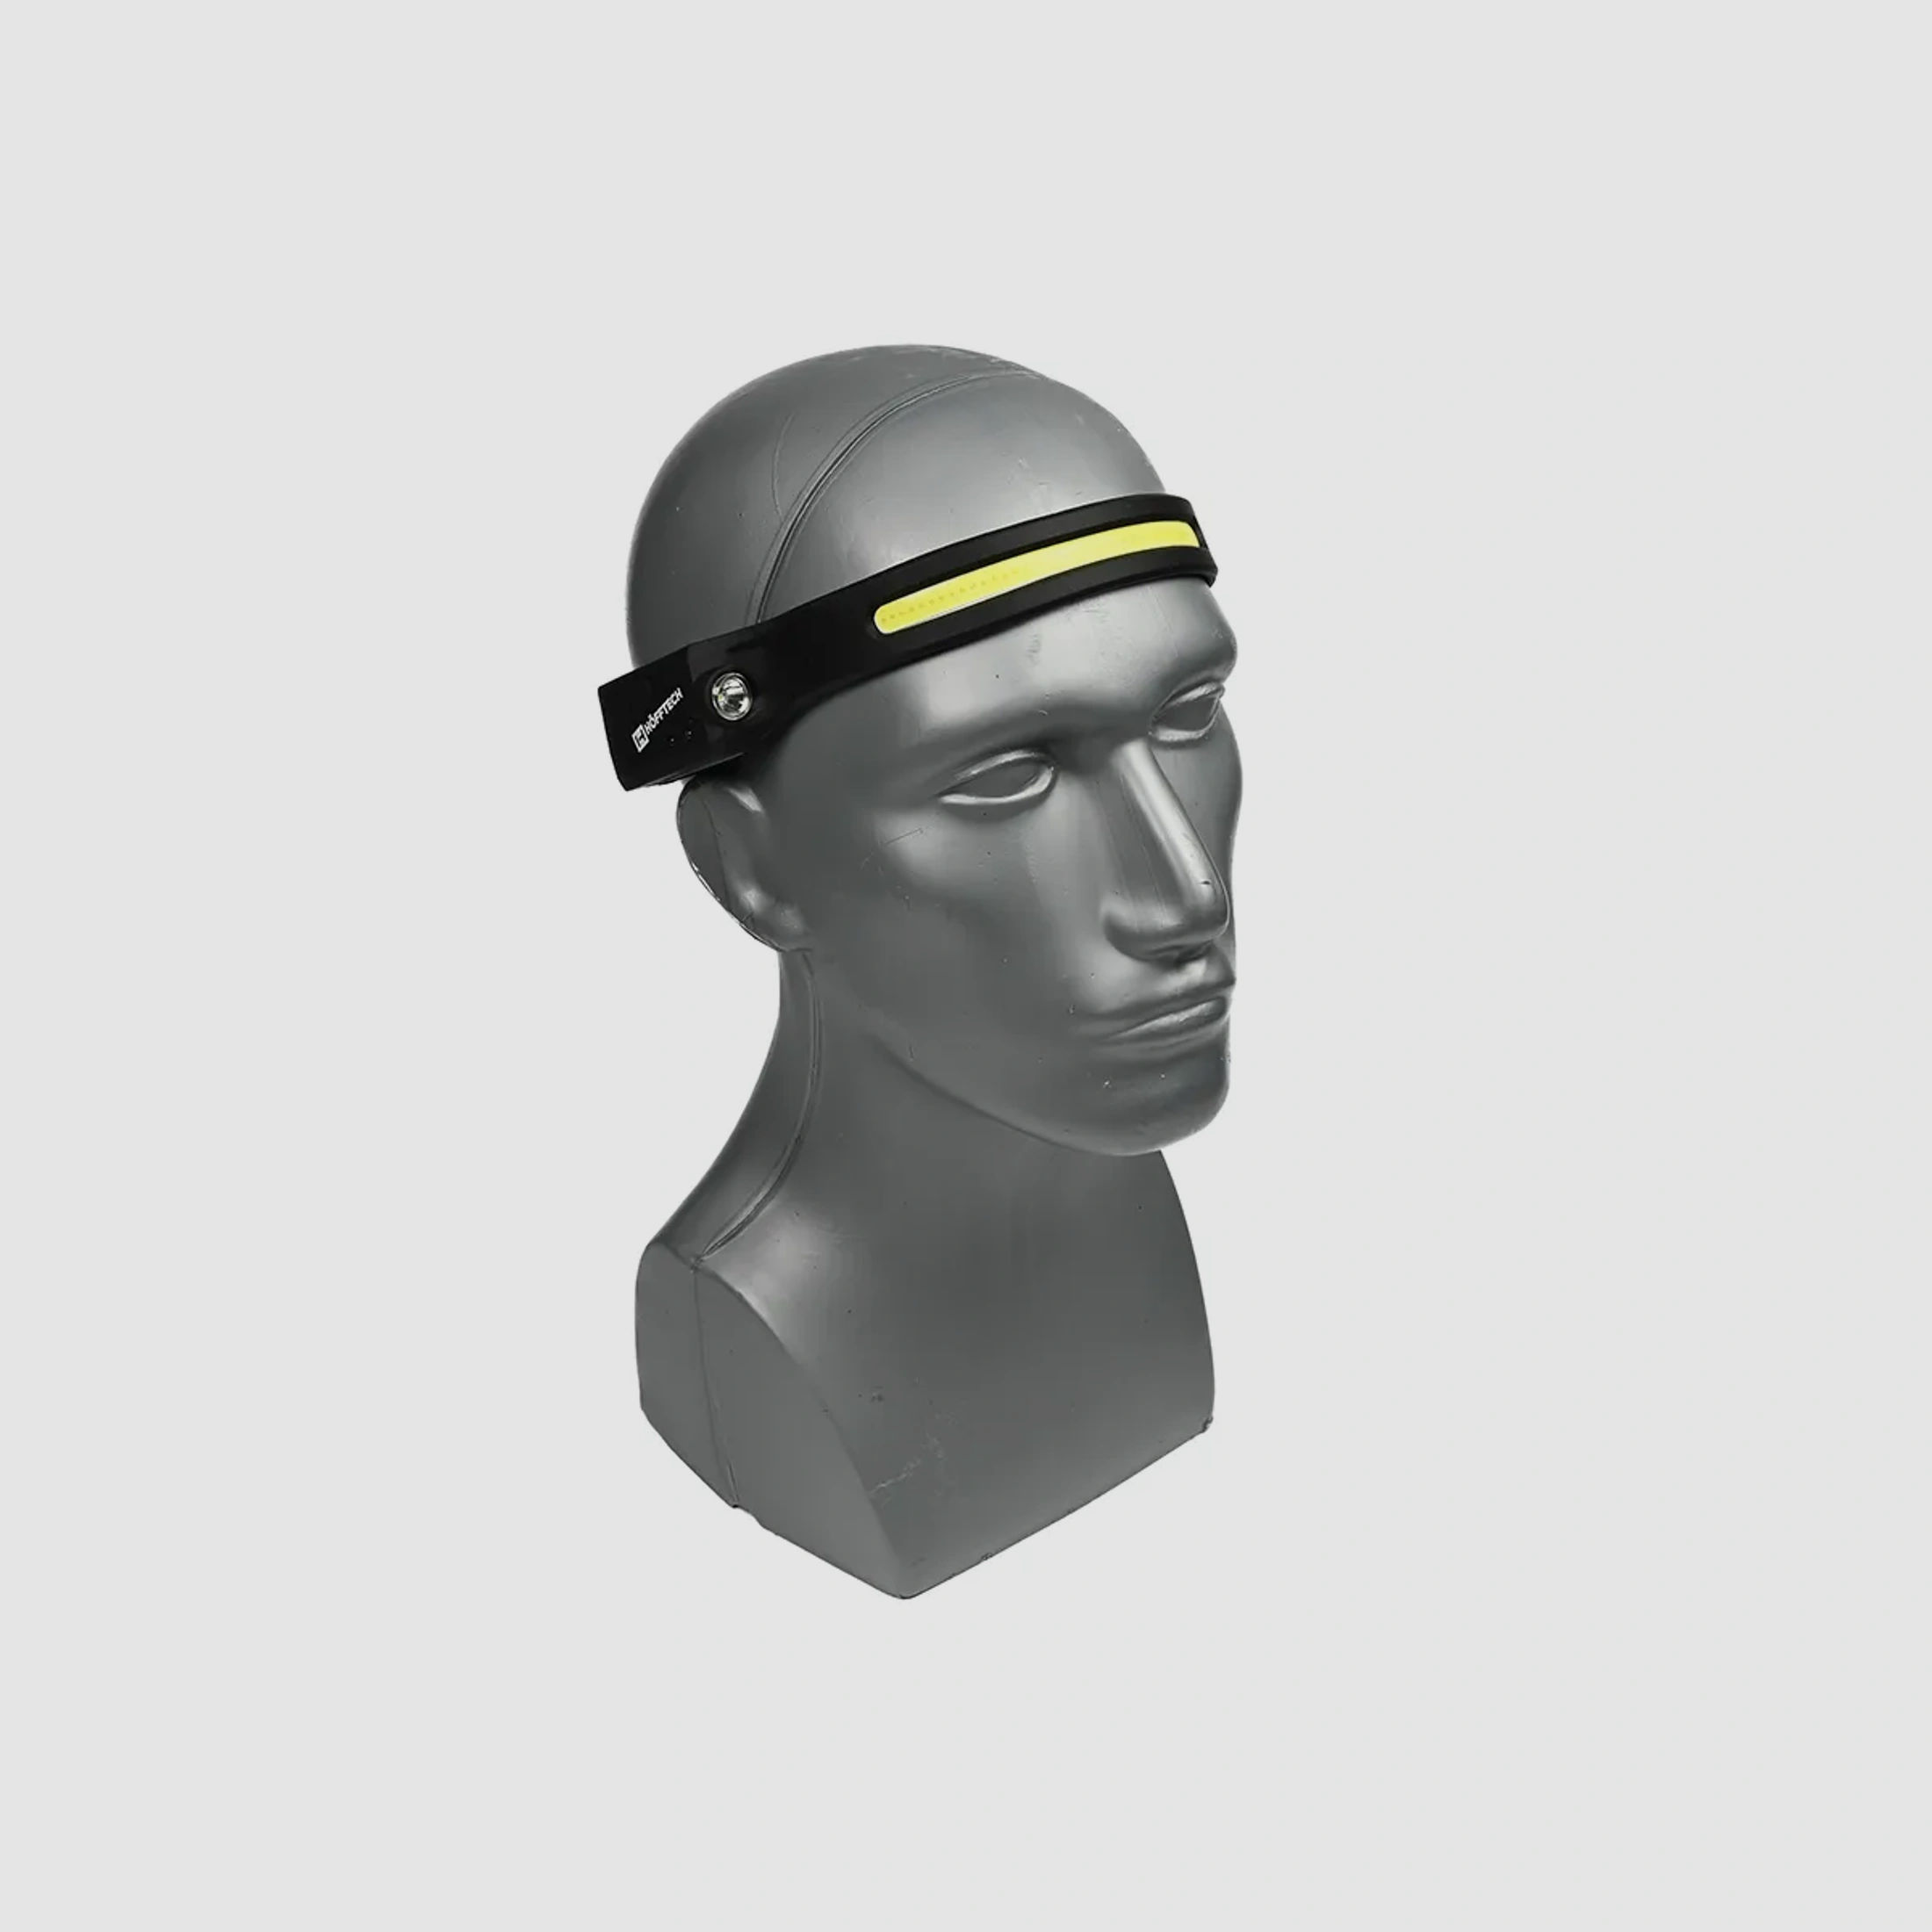 LED-Kopflampe "Wave Light" mit Bewegungssensor - mit USB wiederaufladbar